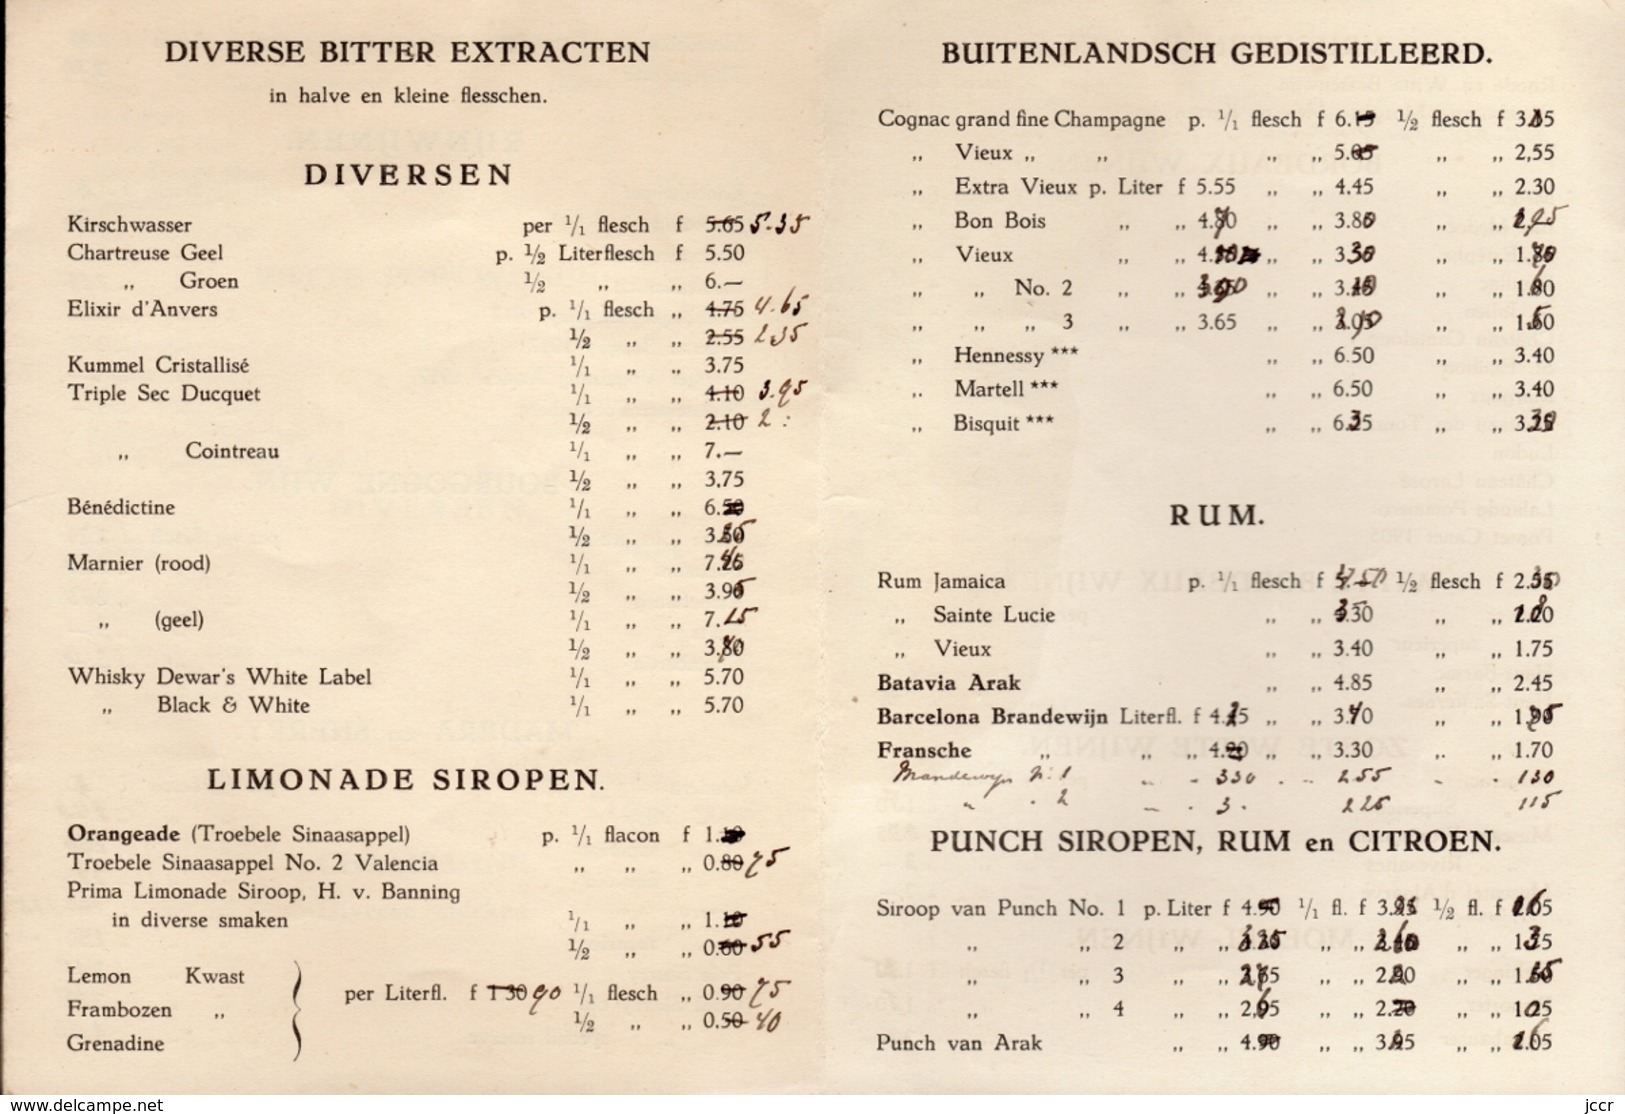 Prijscourant Nov. 1936 Van De Firma Wed. J. Ahaus & Co. Handelaren In Binnen En Buitenlandsch Gedistilleerd Dordrecht - Cooking & Wines